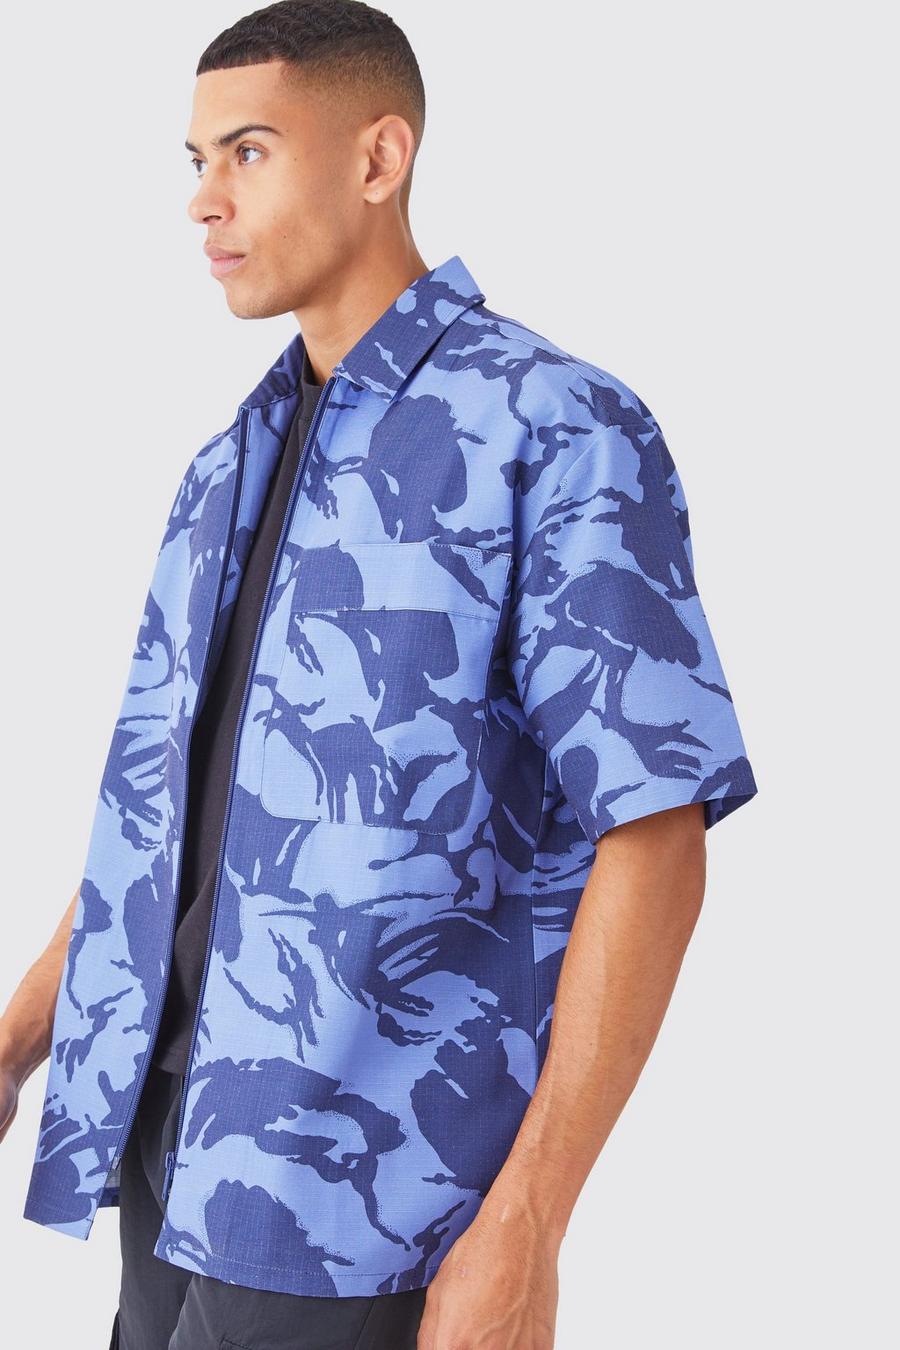 Camicia squadrata oversize in nylon ripstop in fantasia militare con zip, Blue